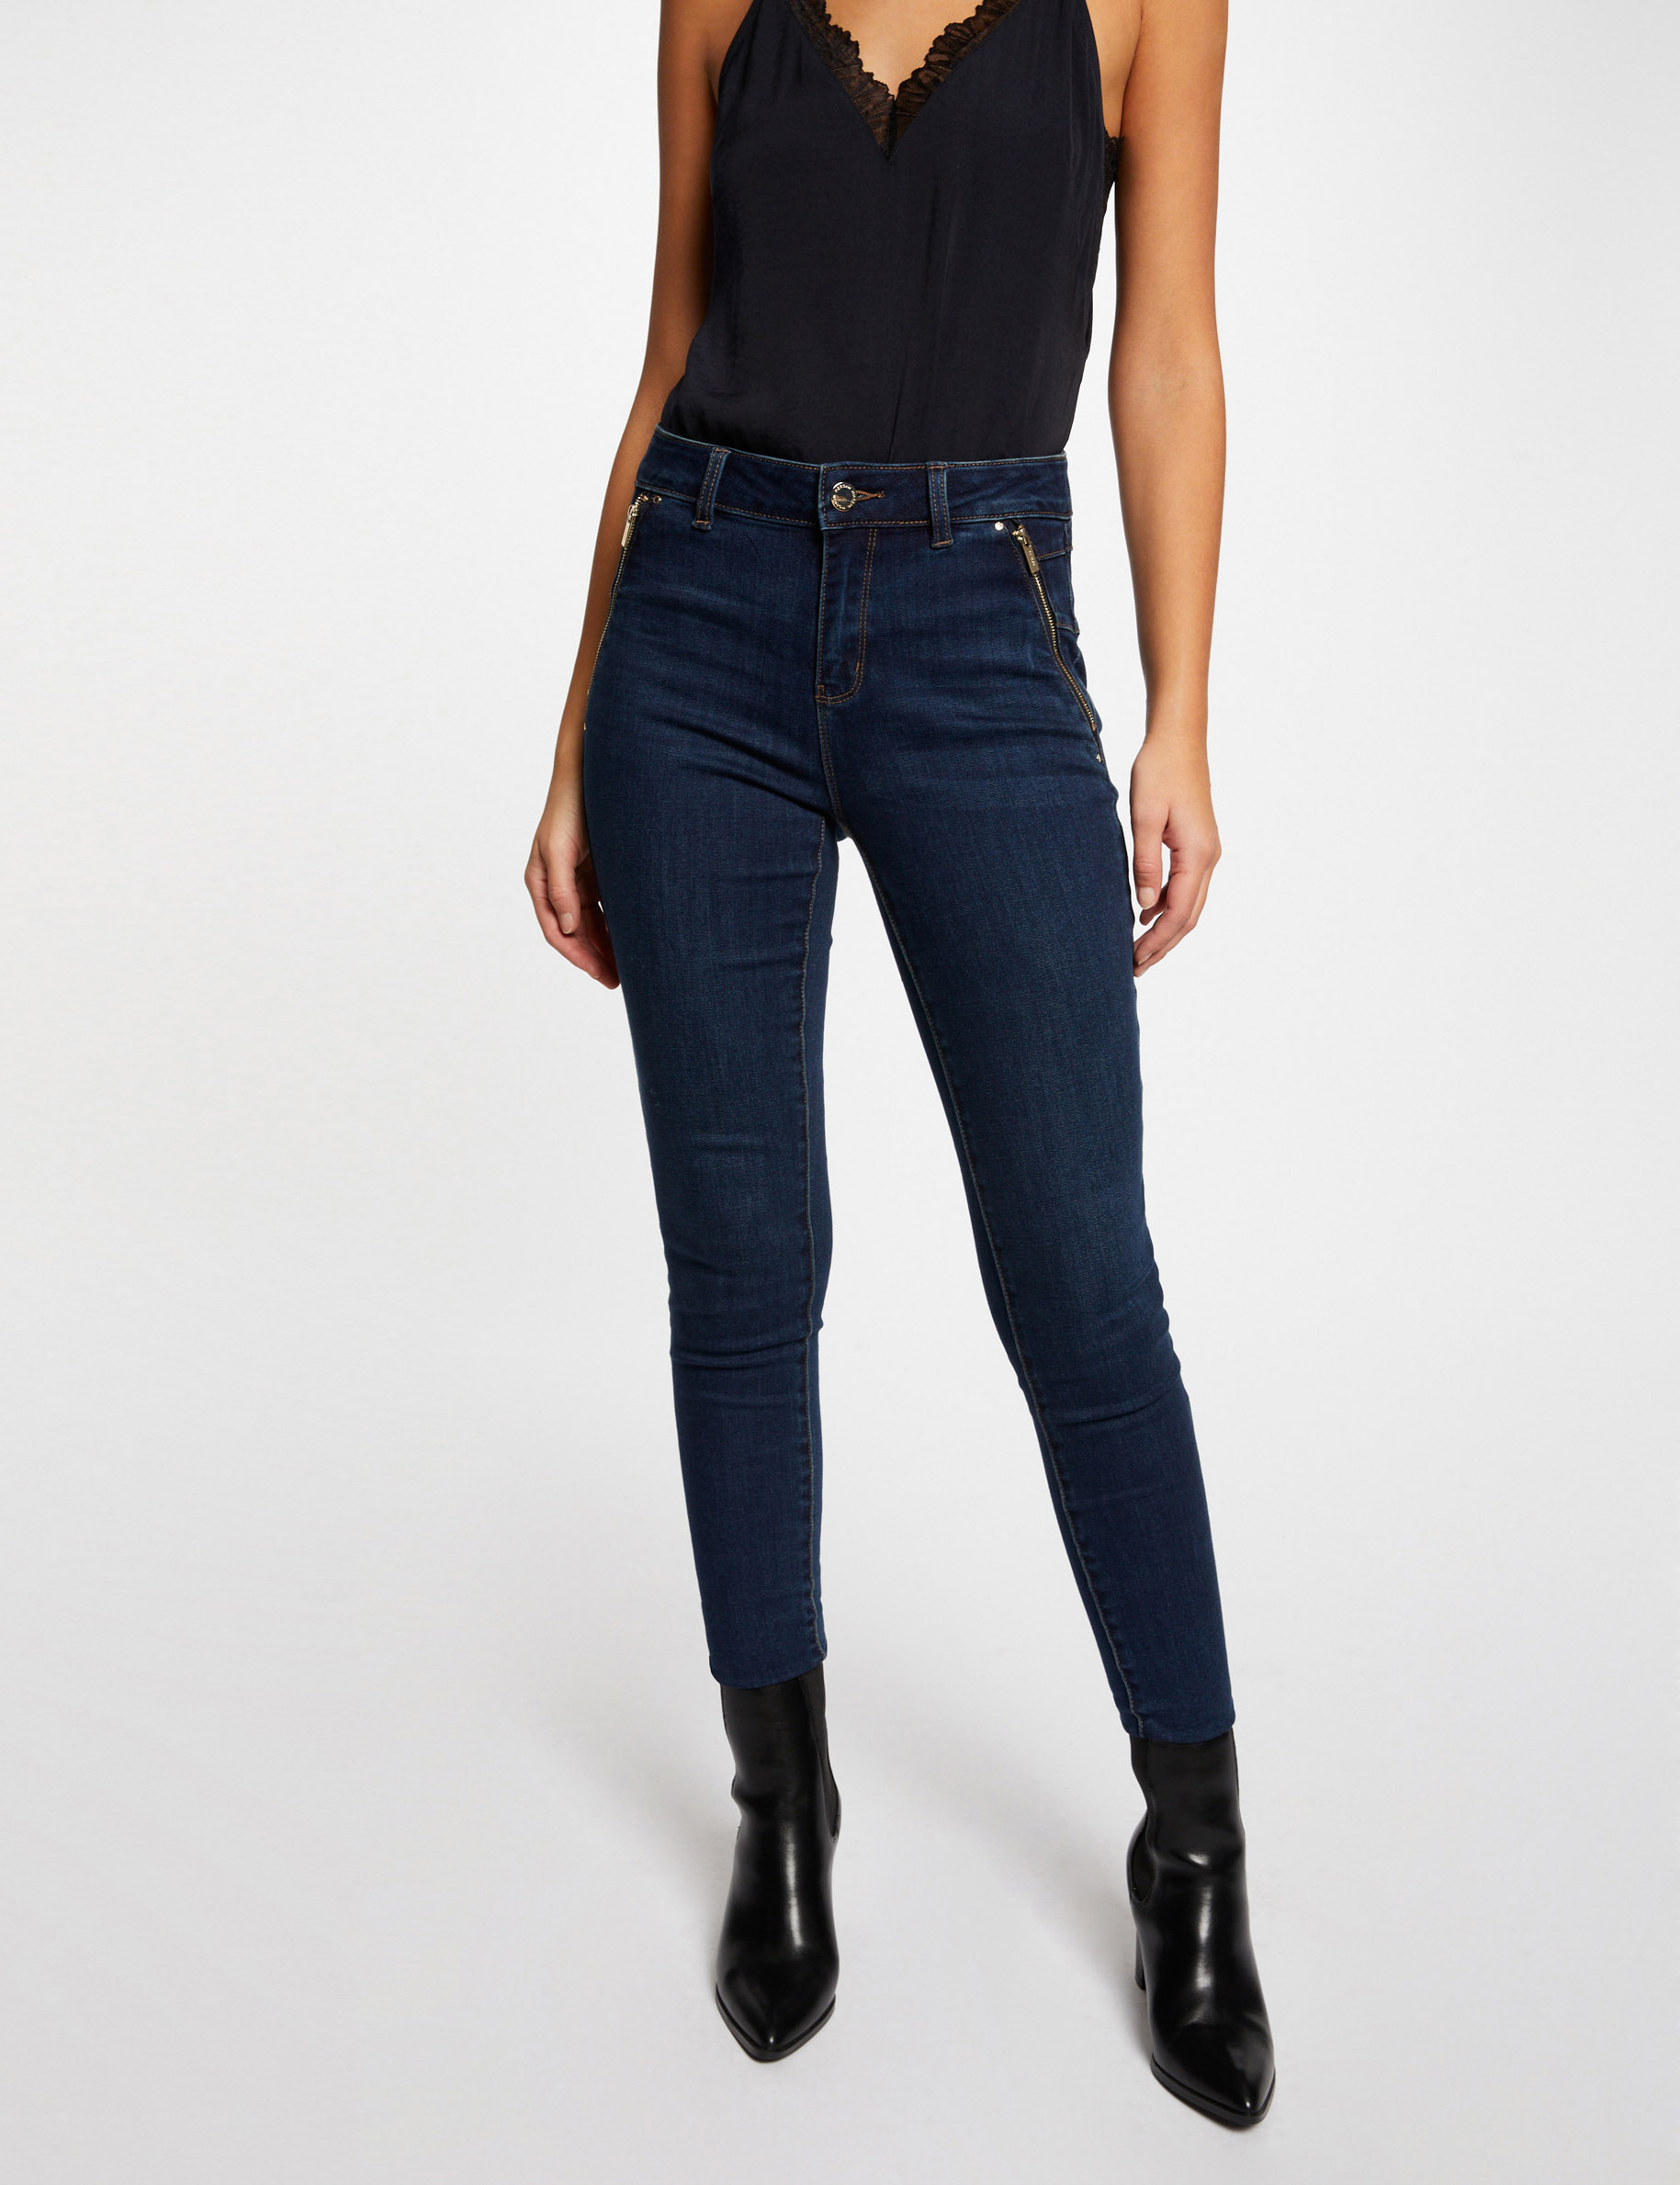 Jeans skinny avec détails zippés jean brut femme